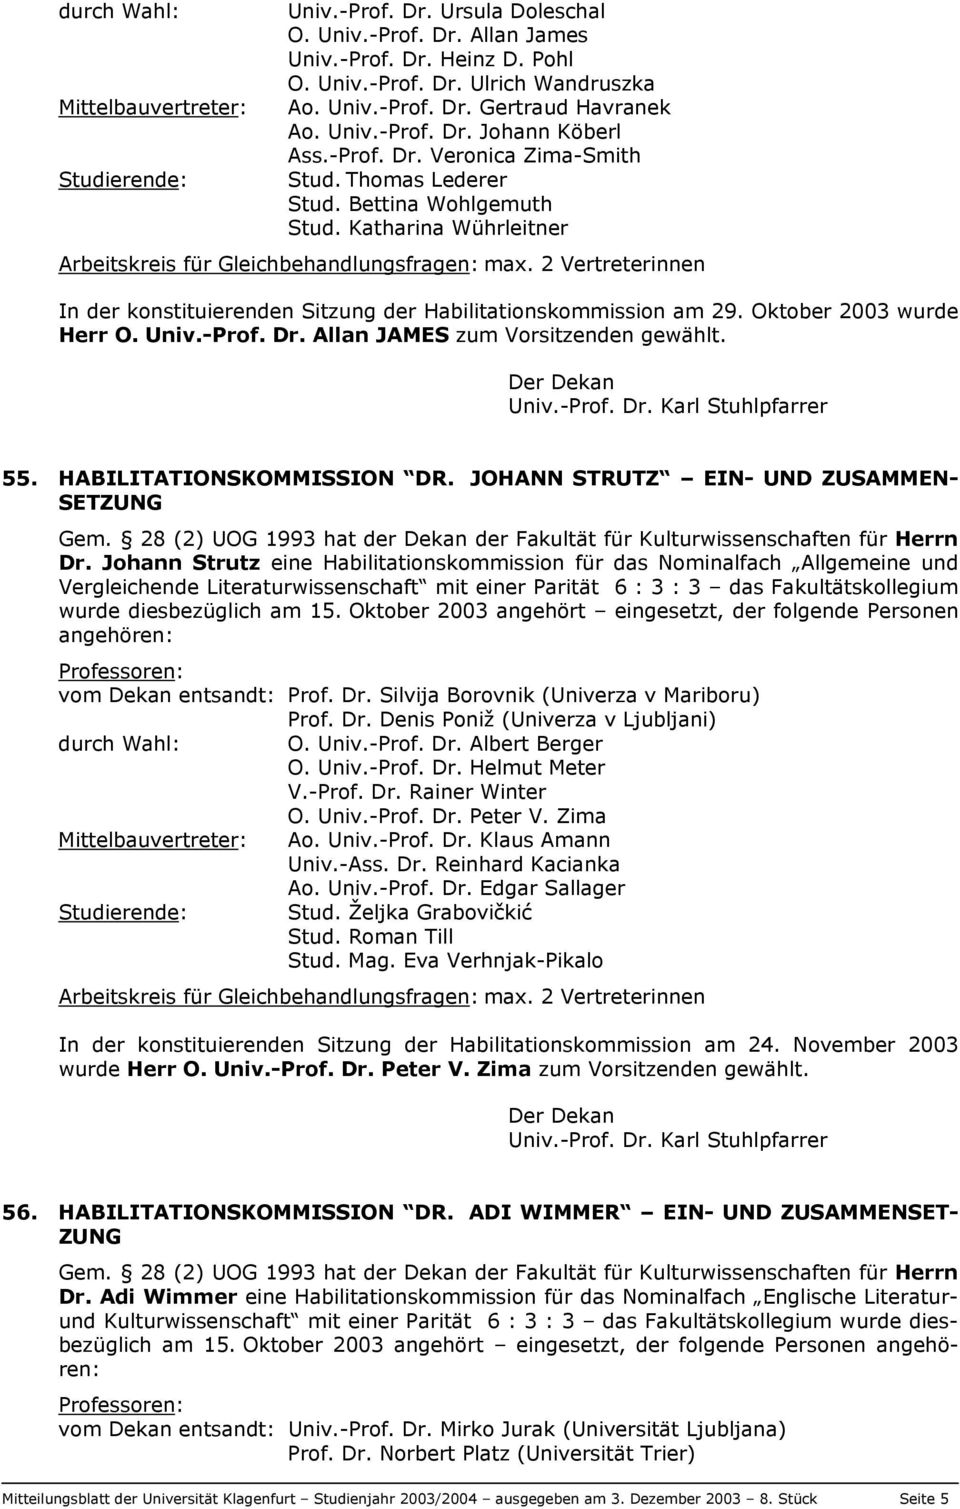 2 Vertreterinnen In der konstituierenden Sitzung der Habilitationskommission am 29. Oktober 2003 wurde Herr O. Univ.-Prof. Dr. Allan JAMES zum Vorsitzenden gewählt. Der Dekan Univ.-Prof. Dr. Karl Stuhlpfarrer 55.